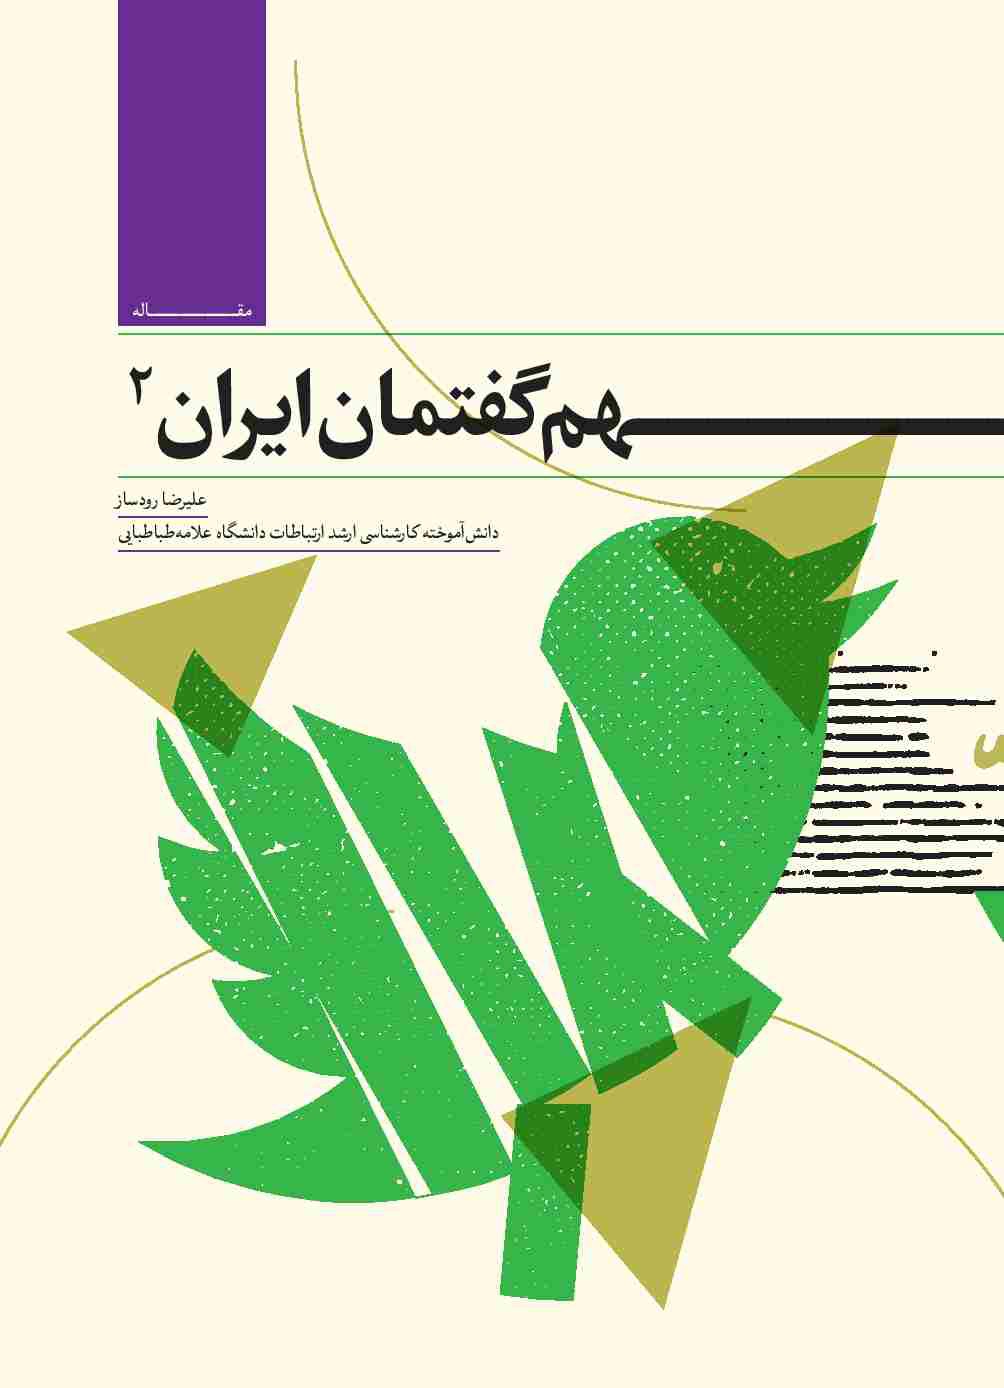 بر جدید و سهم گفتمان ایران